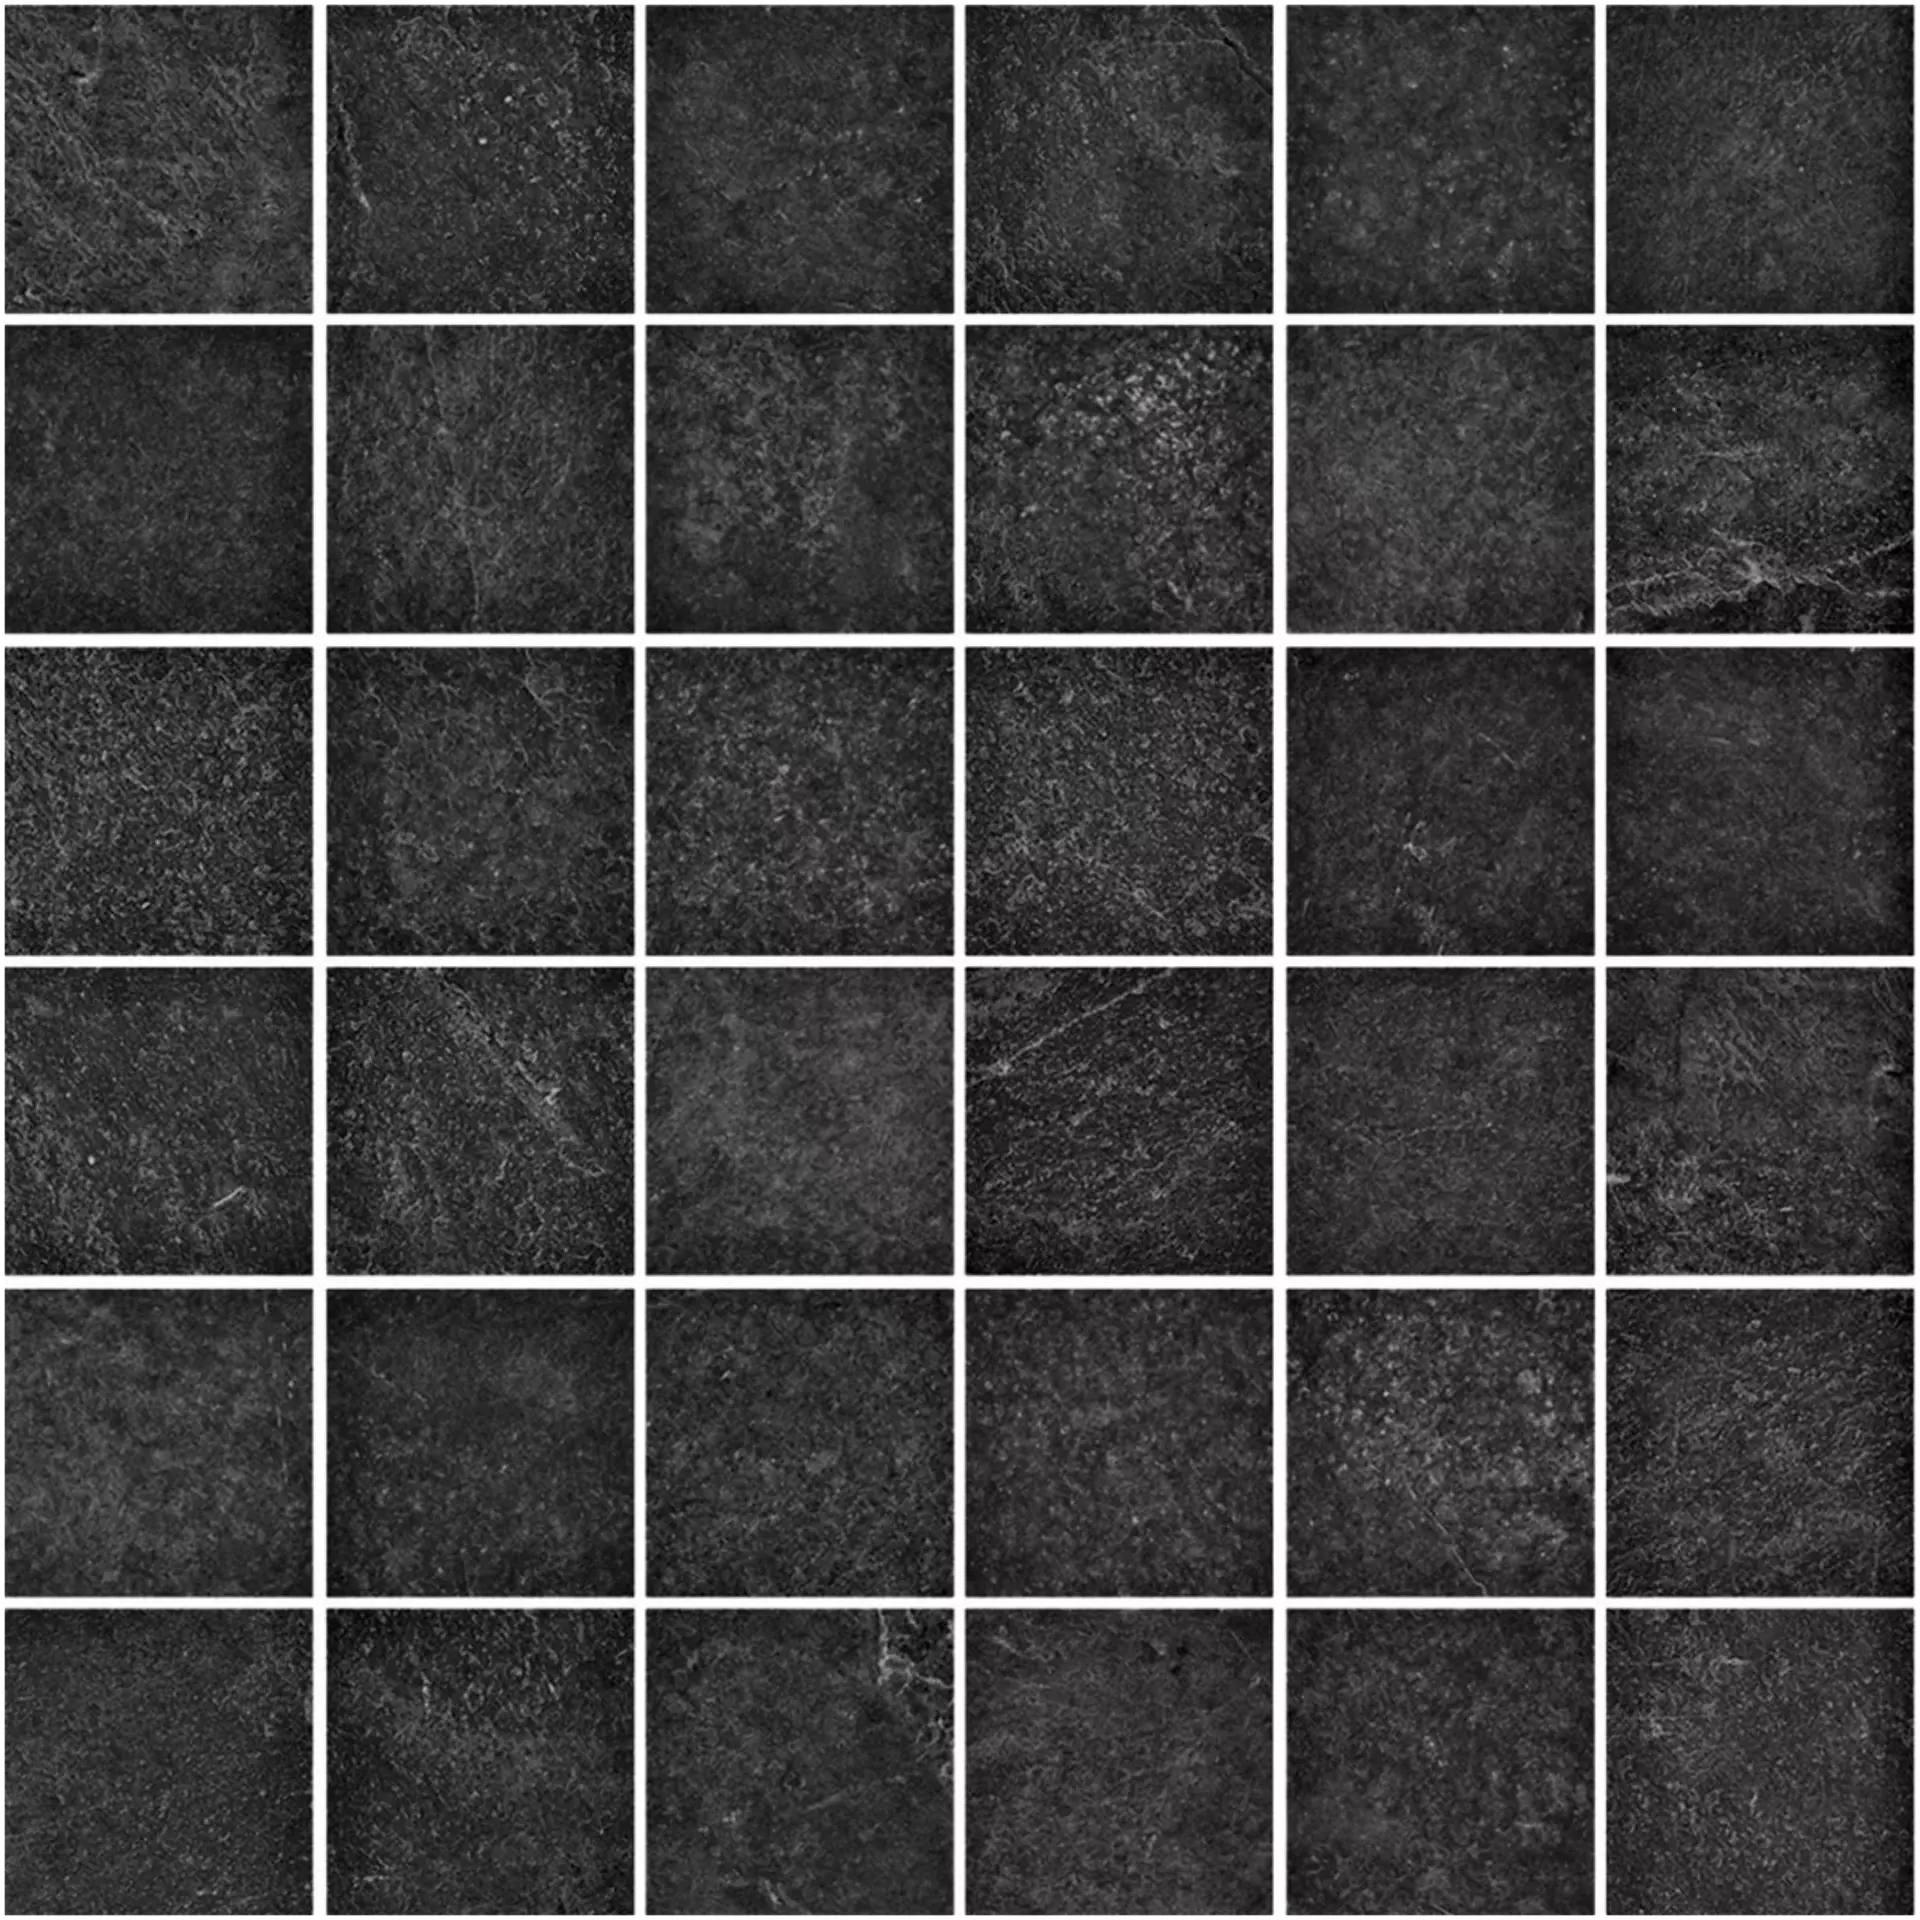 Ragno Realstone Slate Black Naturale – Matt Mosaic R6GZ naturale – matt 30x30cm 10mm